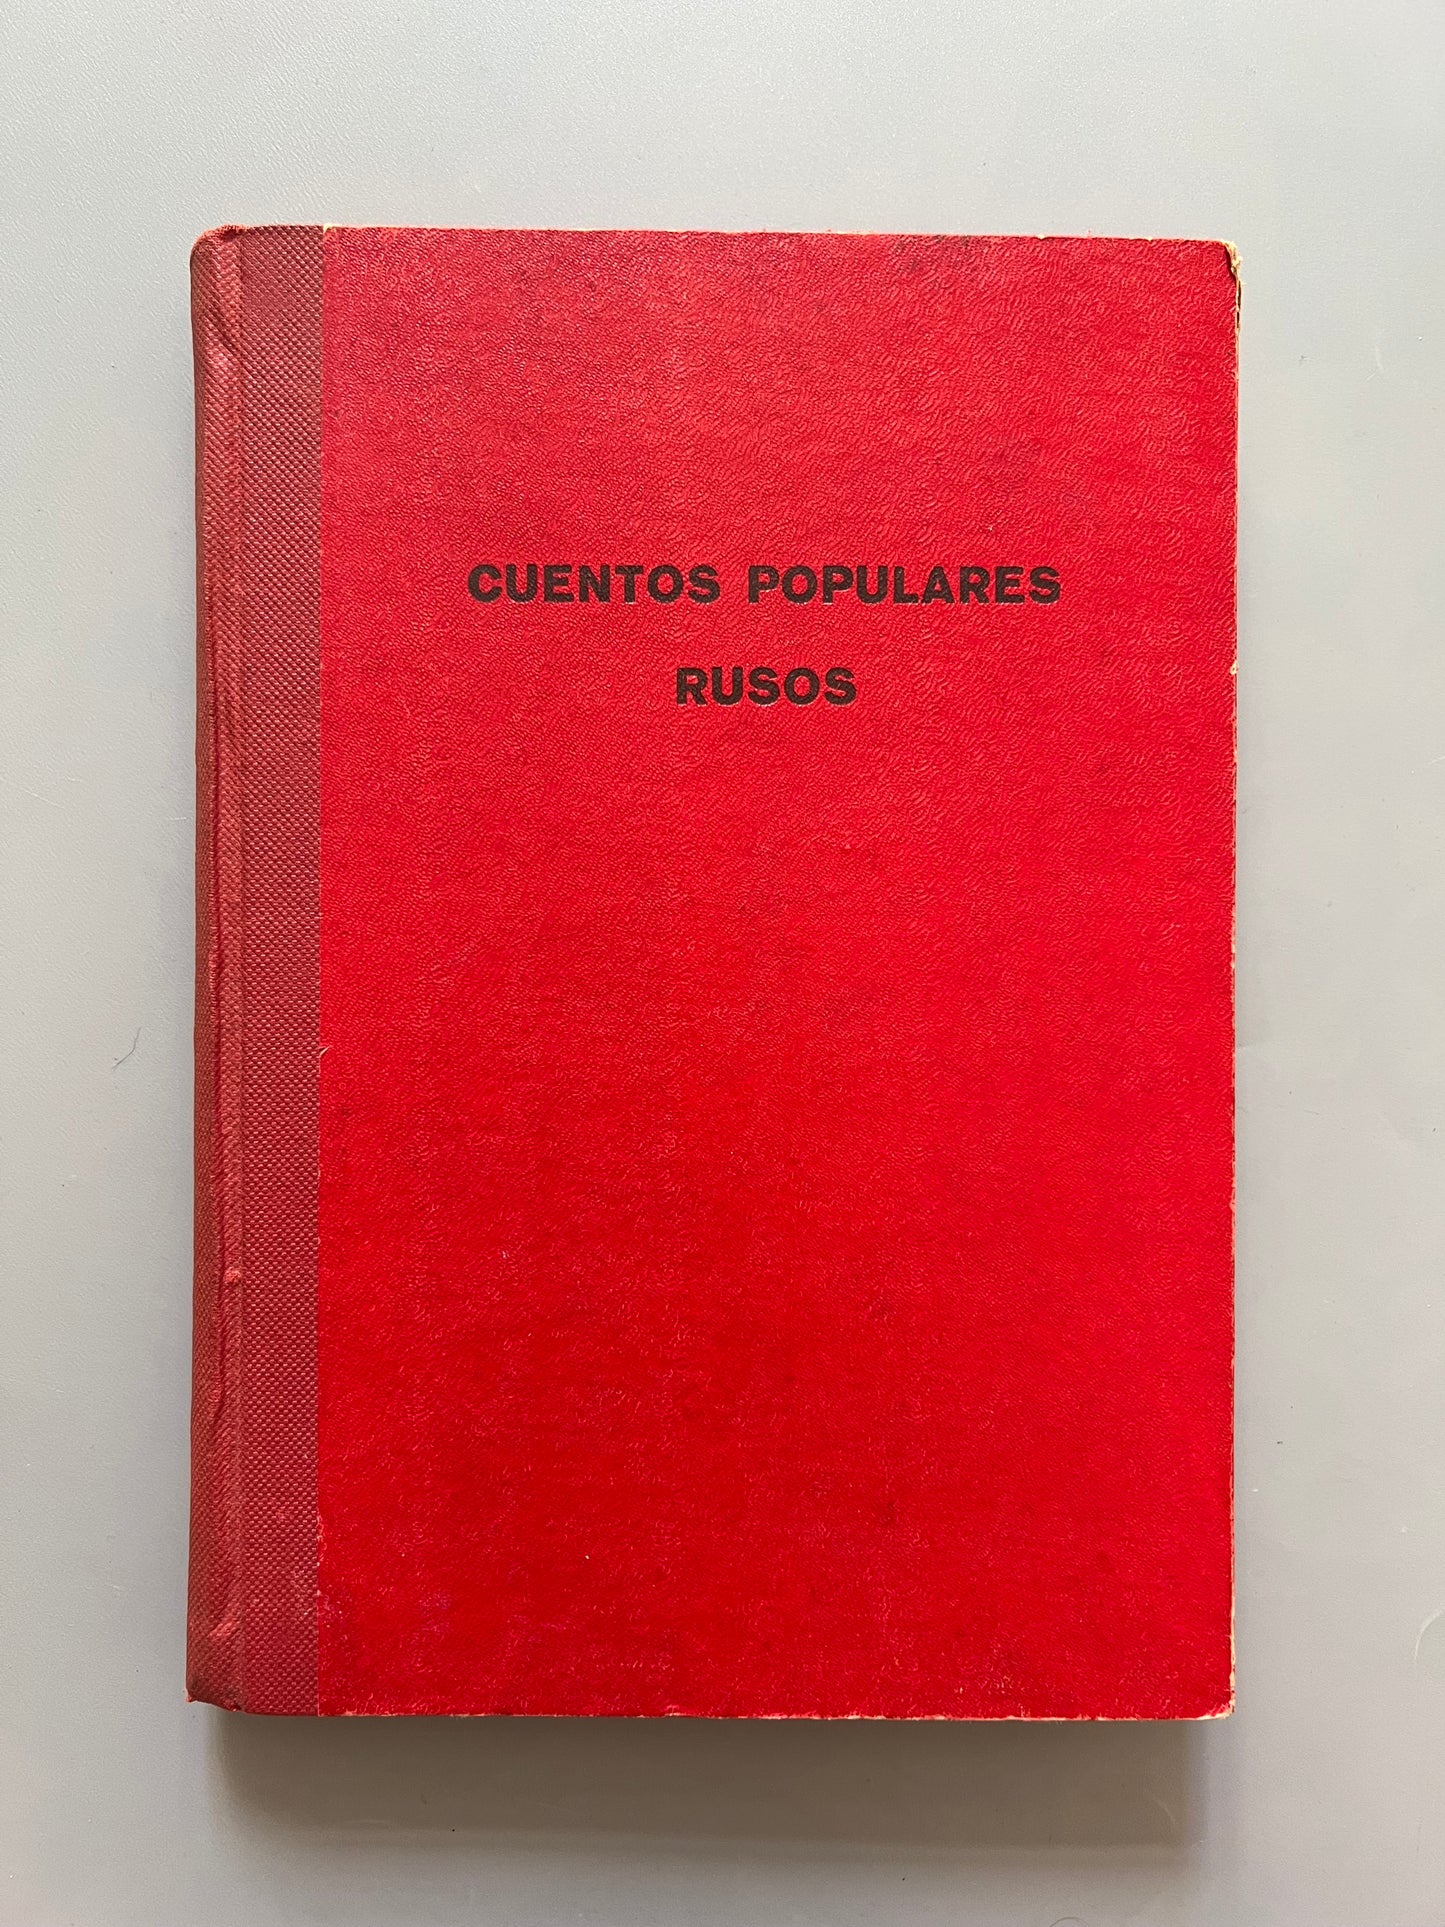 Cuentos populares rusos, Magín Valls - Editorial Baguña Hnos., 1954